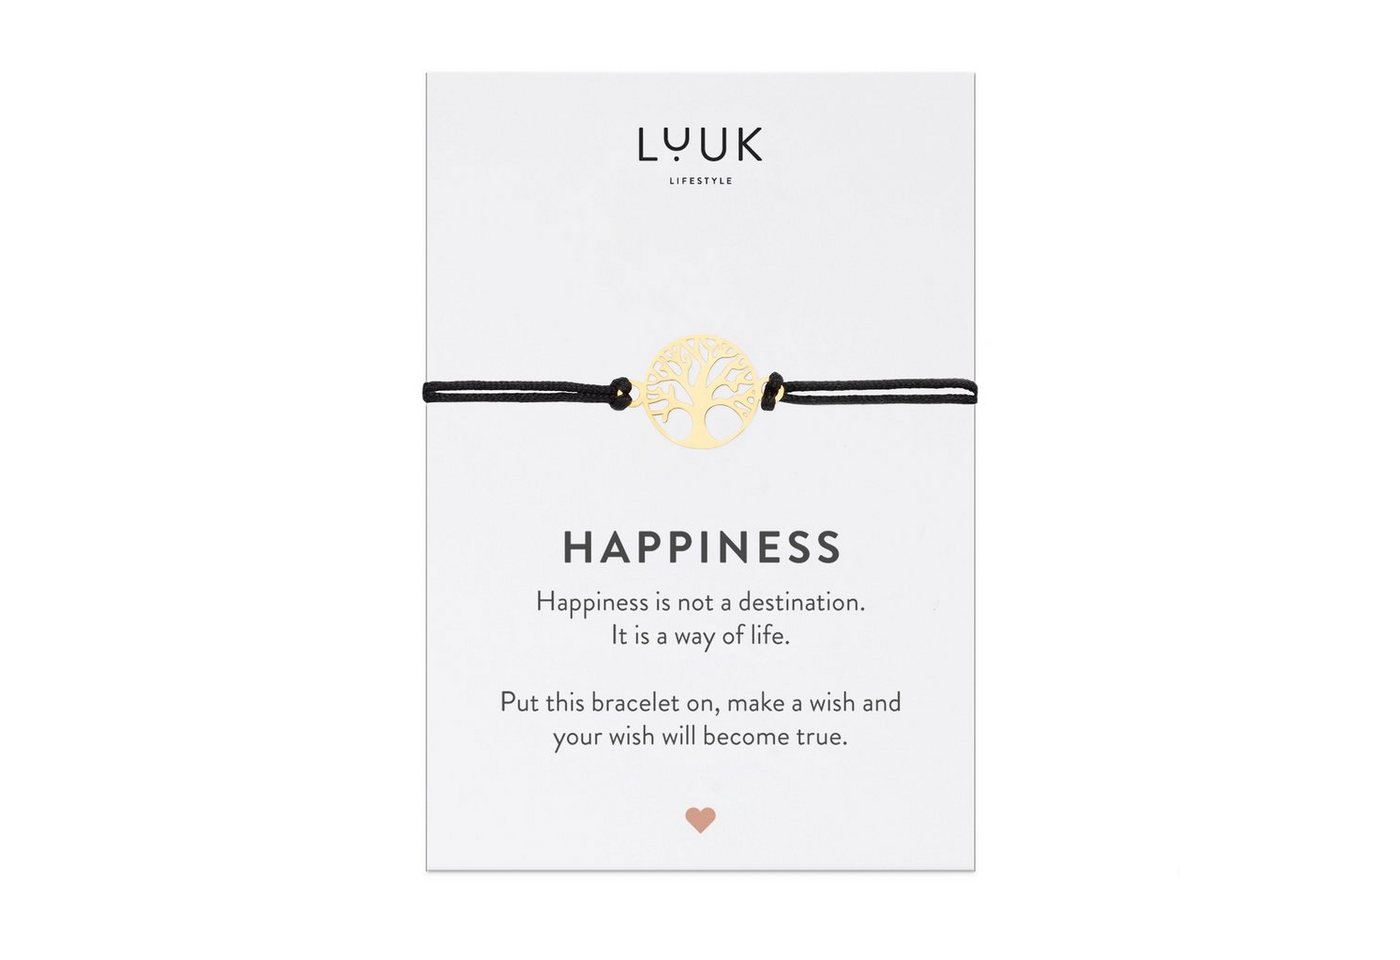 LUUK LIFESTYLE Freundschaftsarmband Lebensbaum, handmade, mit Happiness Spruchkarte von LUUK LIFESTYLE